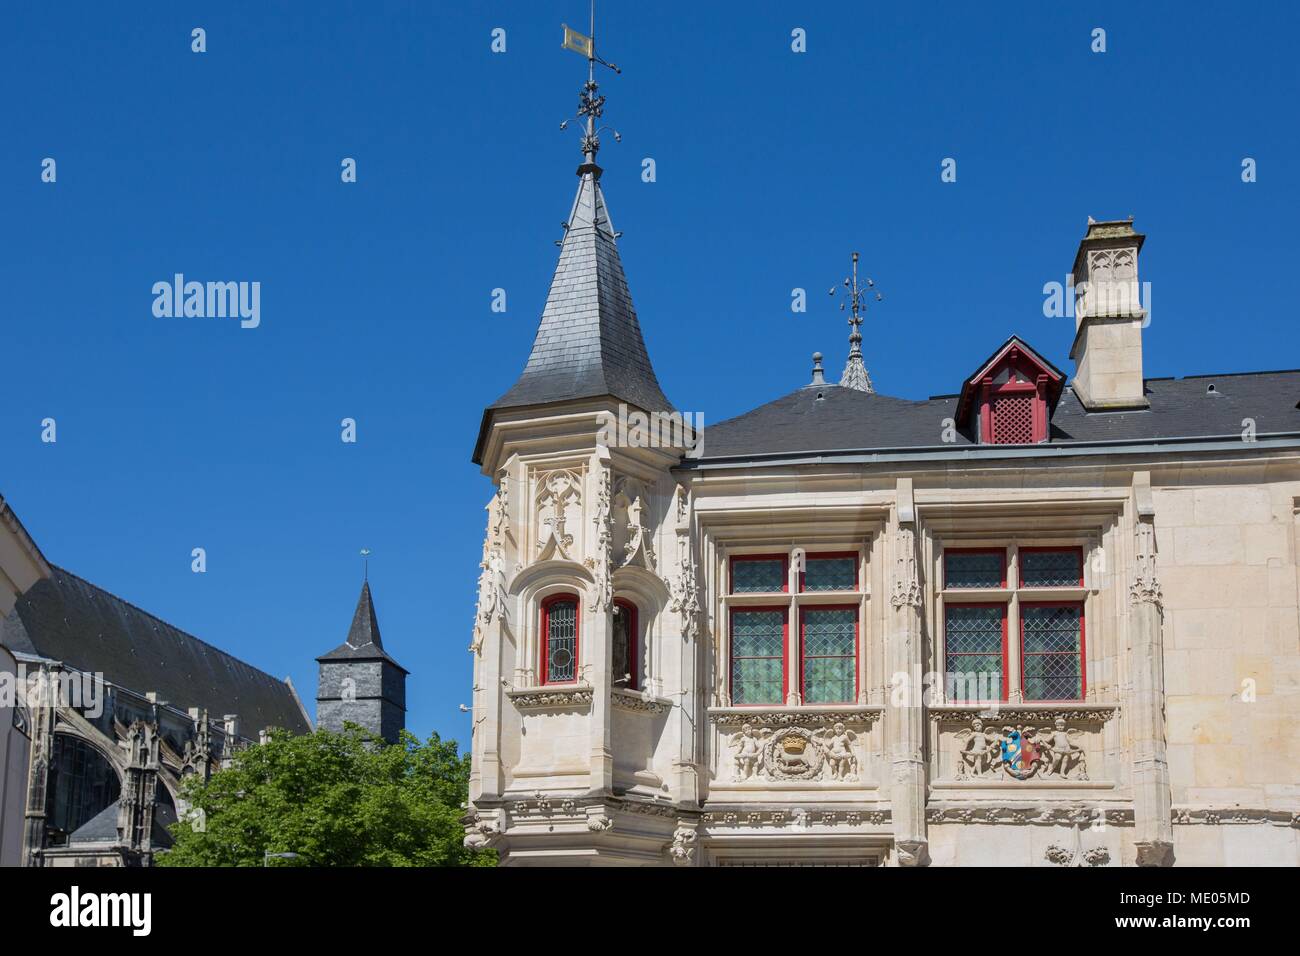 France, Rouen, Place de la Pucelle, l'Hôtel de Bourgtheroulde, l'architecture gothique, l'Hôtel particulier, clocher de l'église Saint-Eloi, Banque D'Images